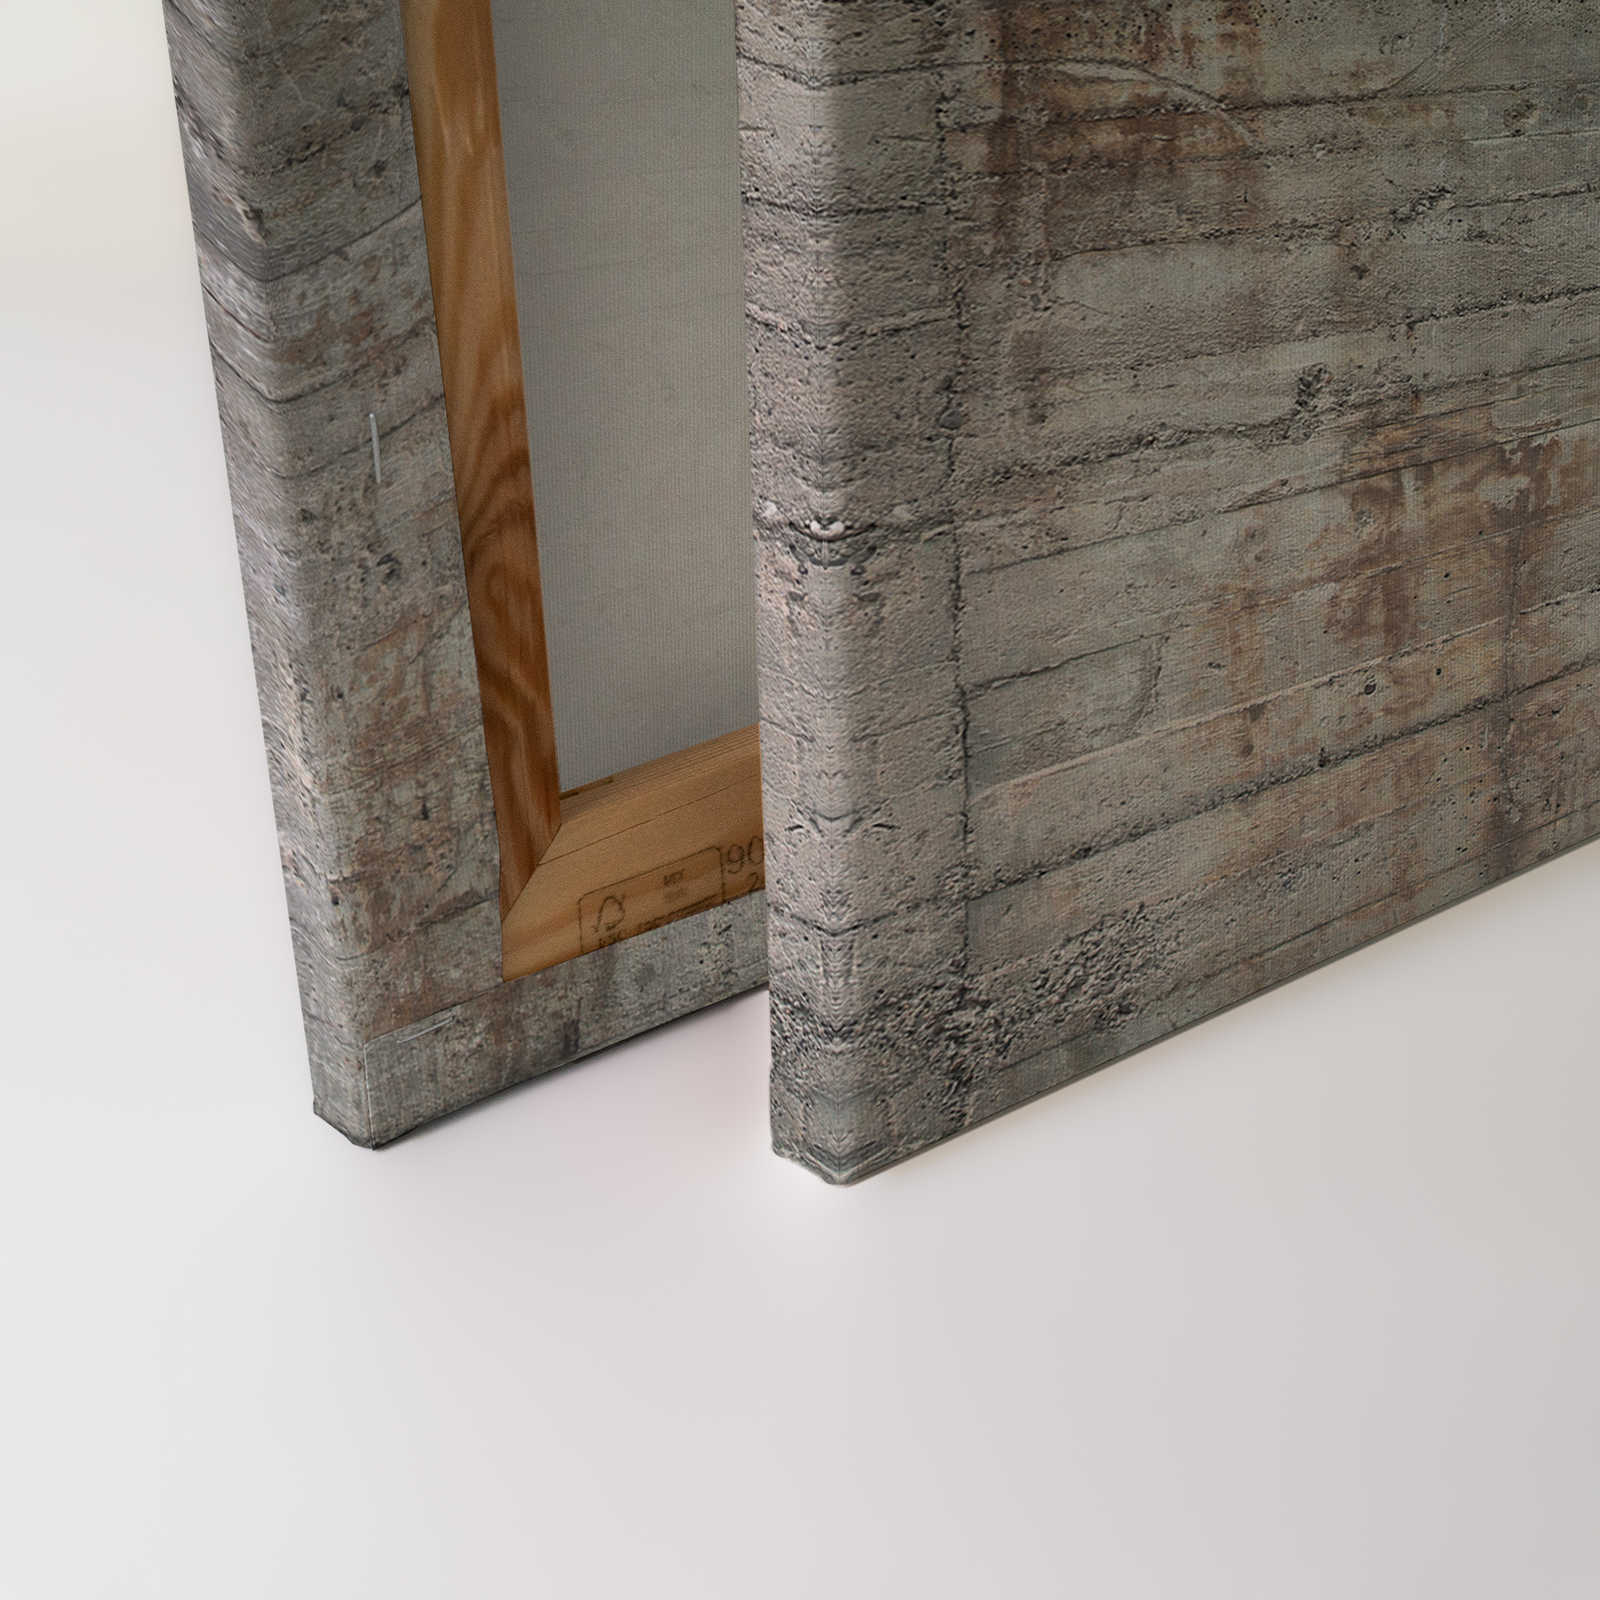             Béton toile rustique béton armé gris marron - 1,20 m x 0,80 m
        